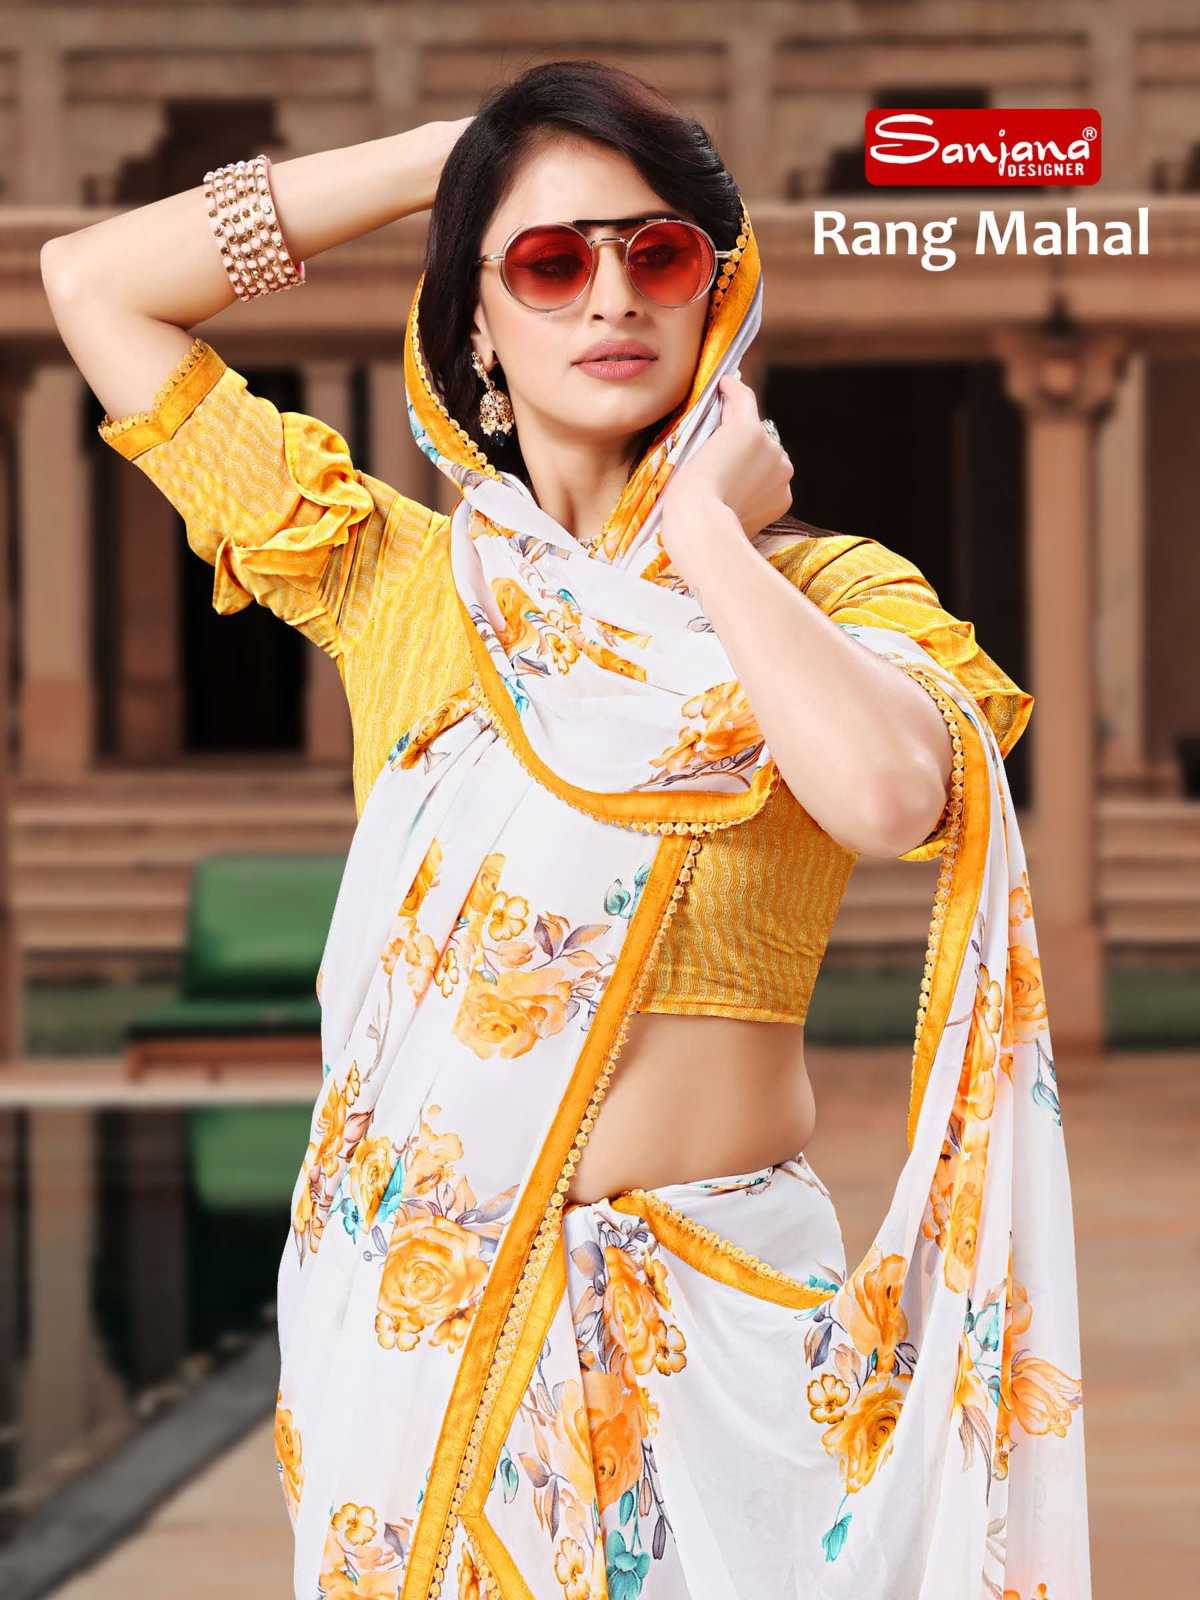 sanjana designer rang mahal beautiful fancy sarees supplier